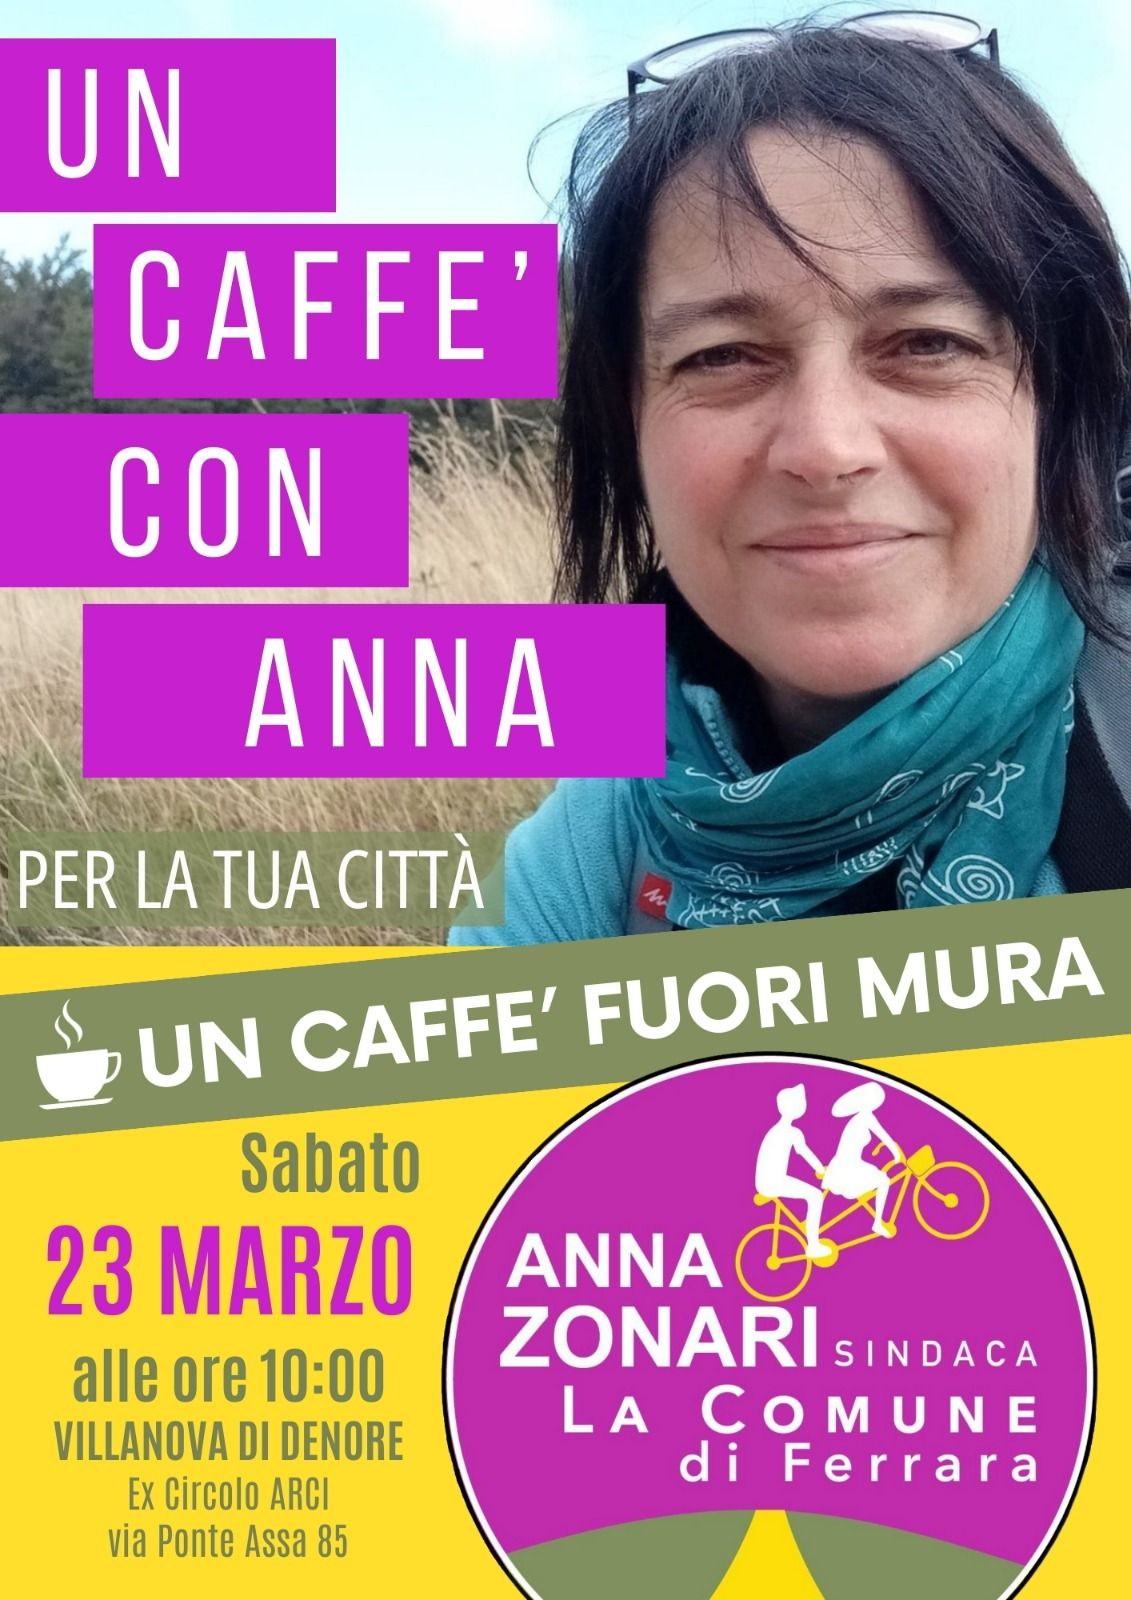 Caffè con Anna a Villanova di Denore